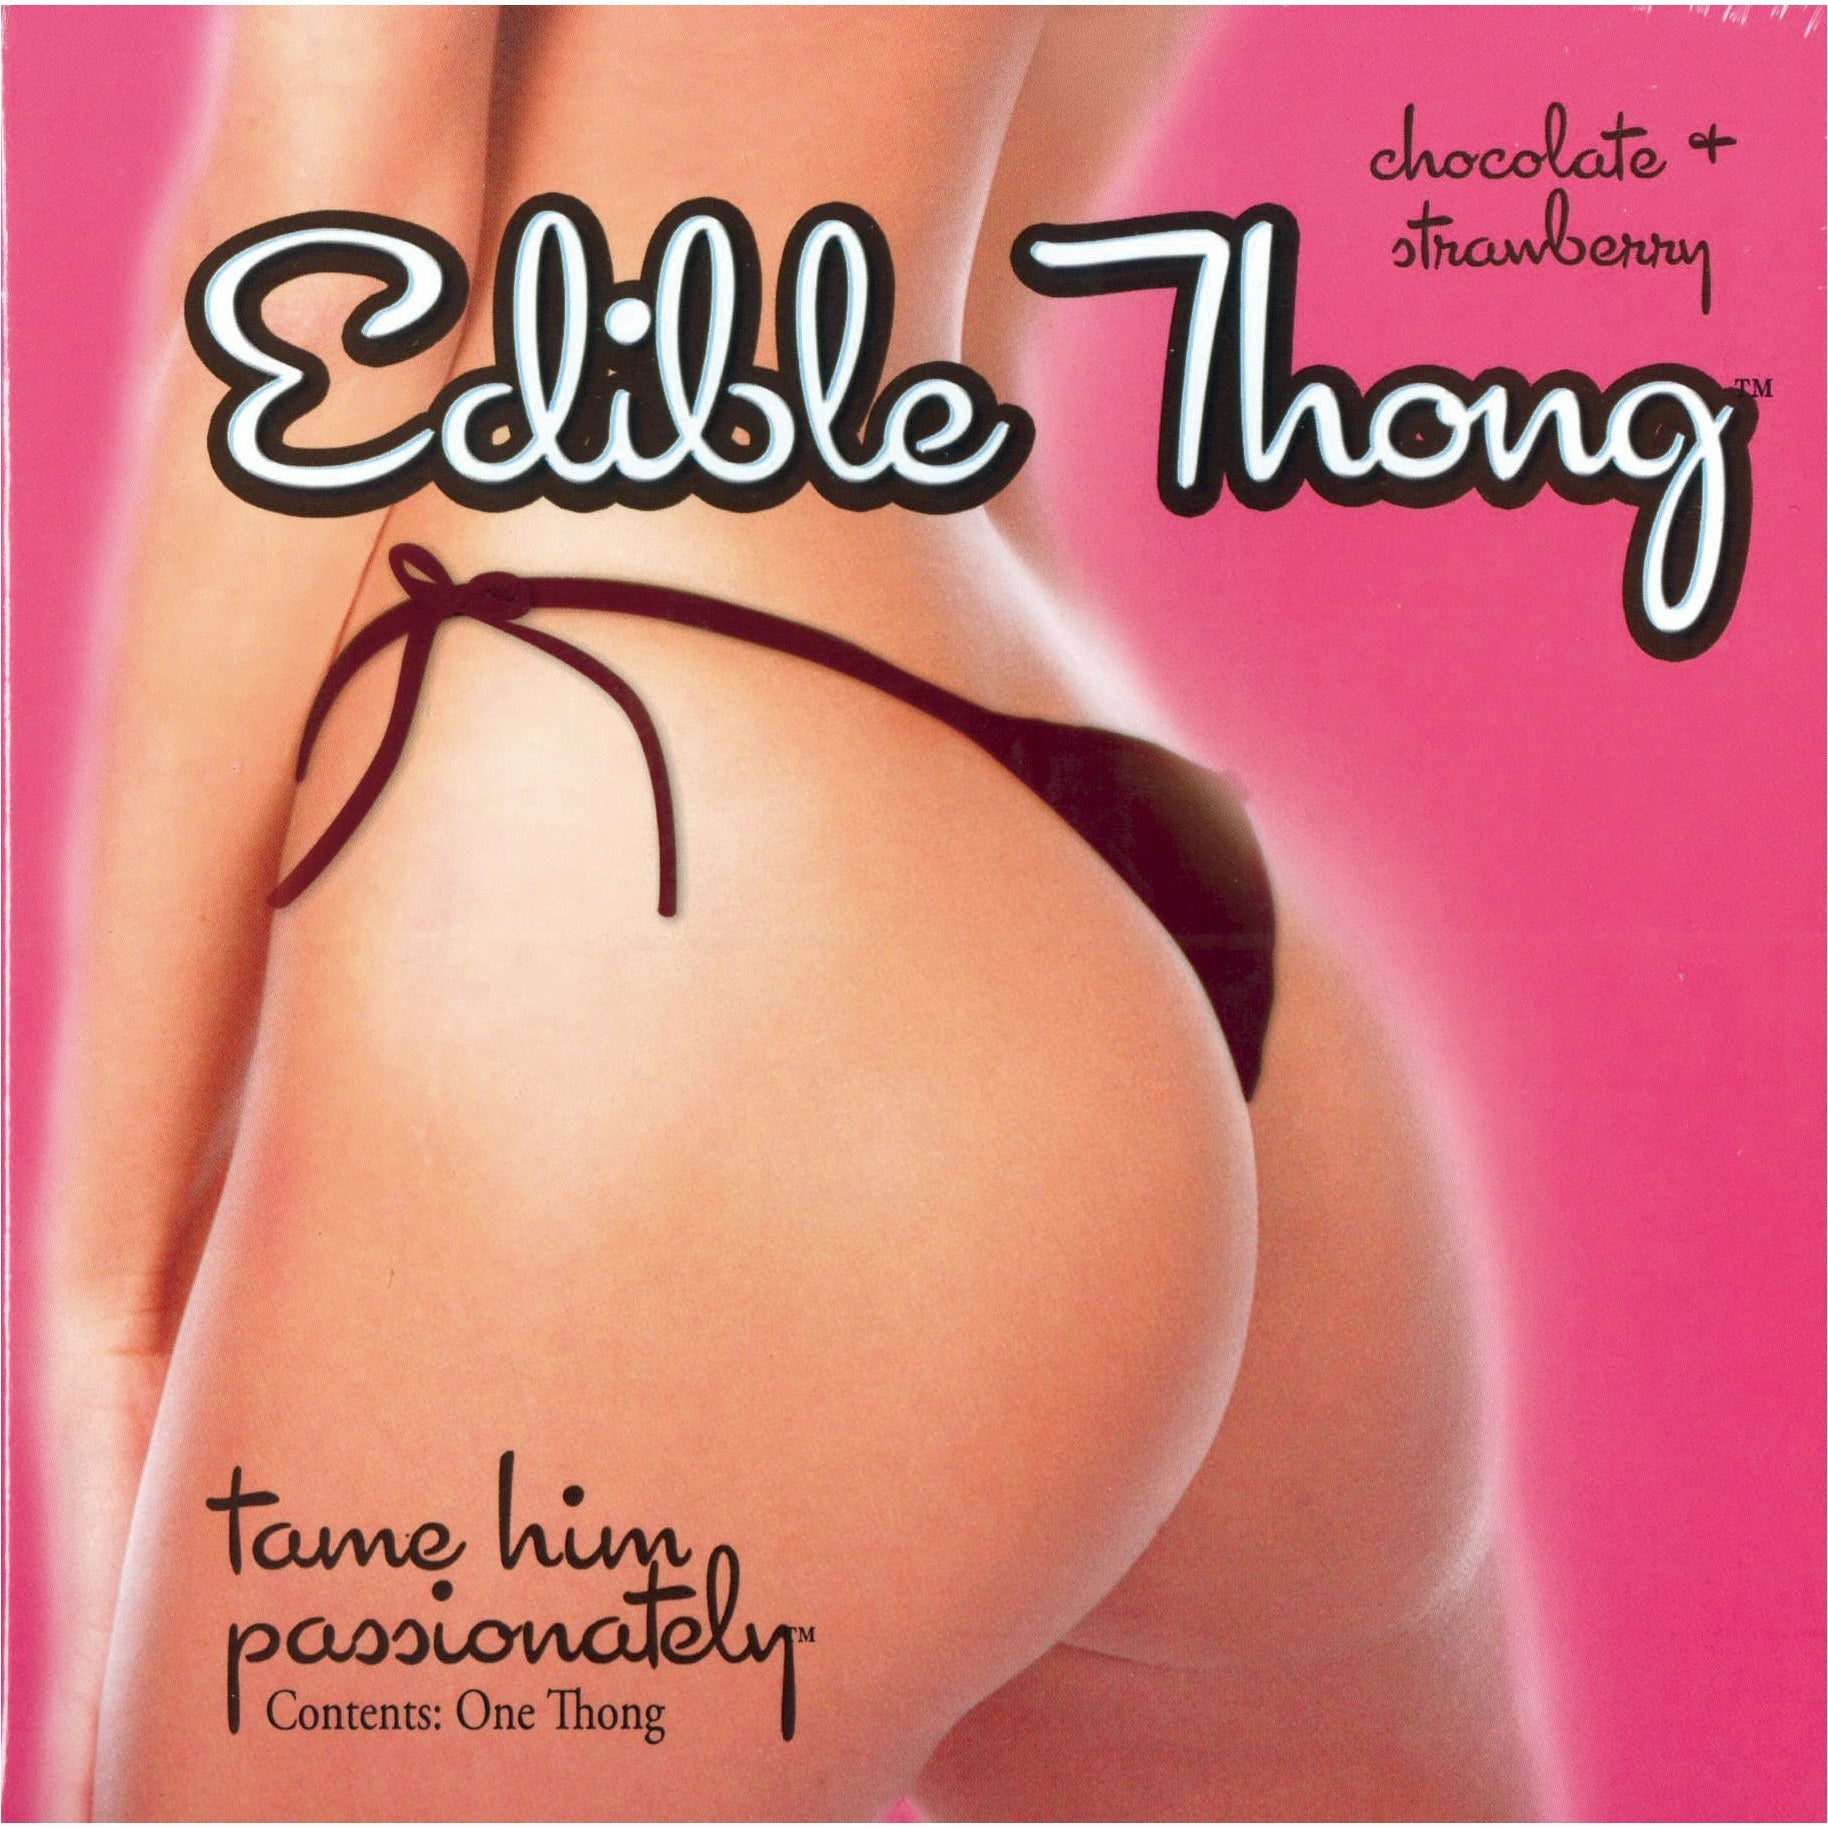 King Edible Thong